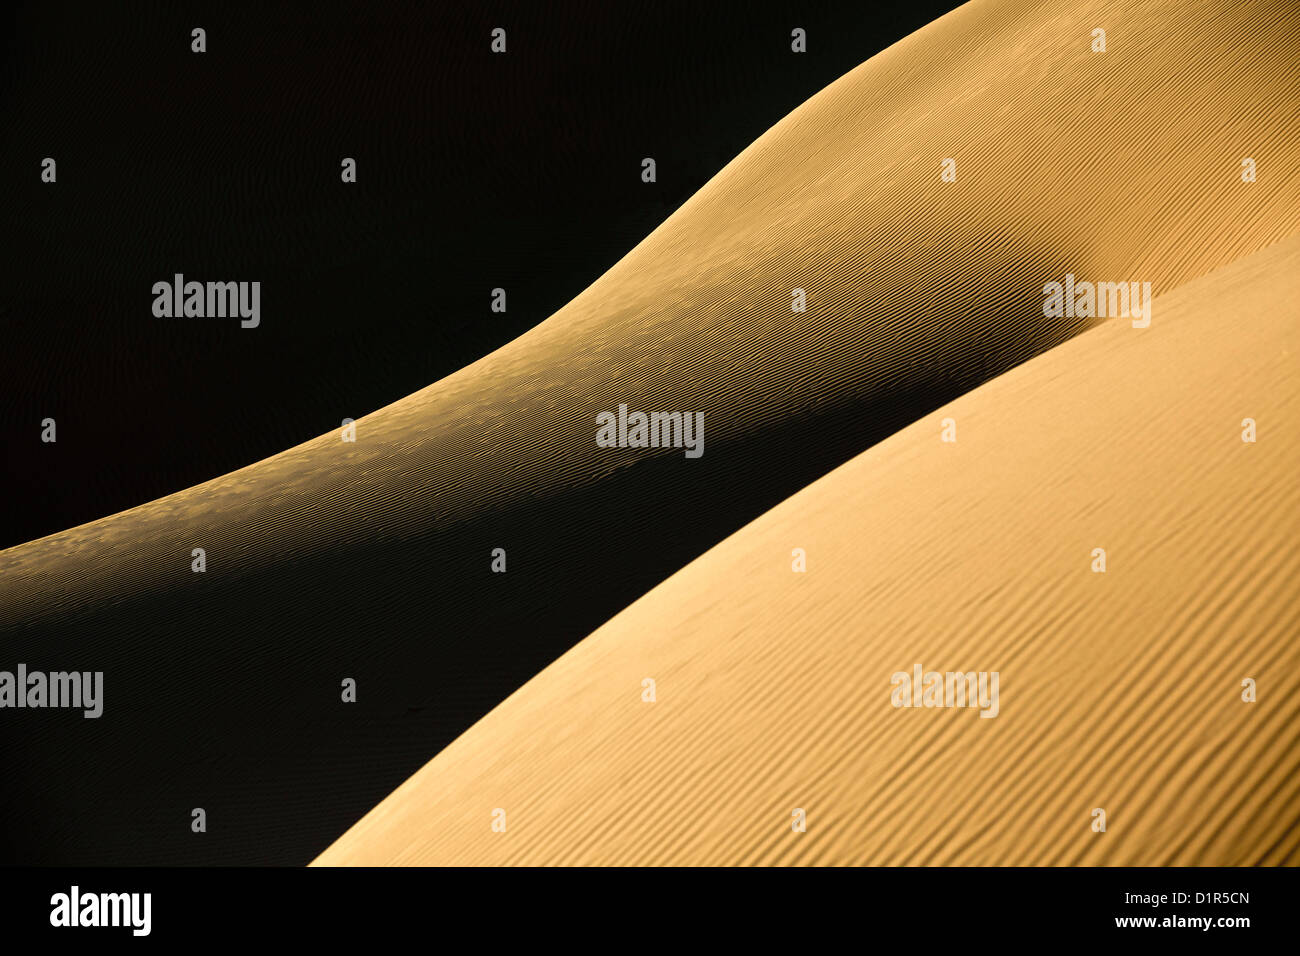 Le Maroc, M'Hamid, Erg Chigaga dunes de sable. Désert du Sahara. Détail des marques d'ondulation. Banque D'Images